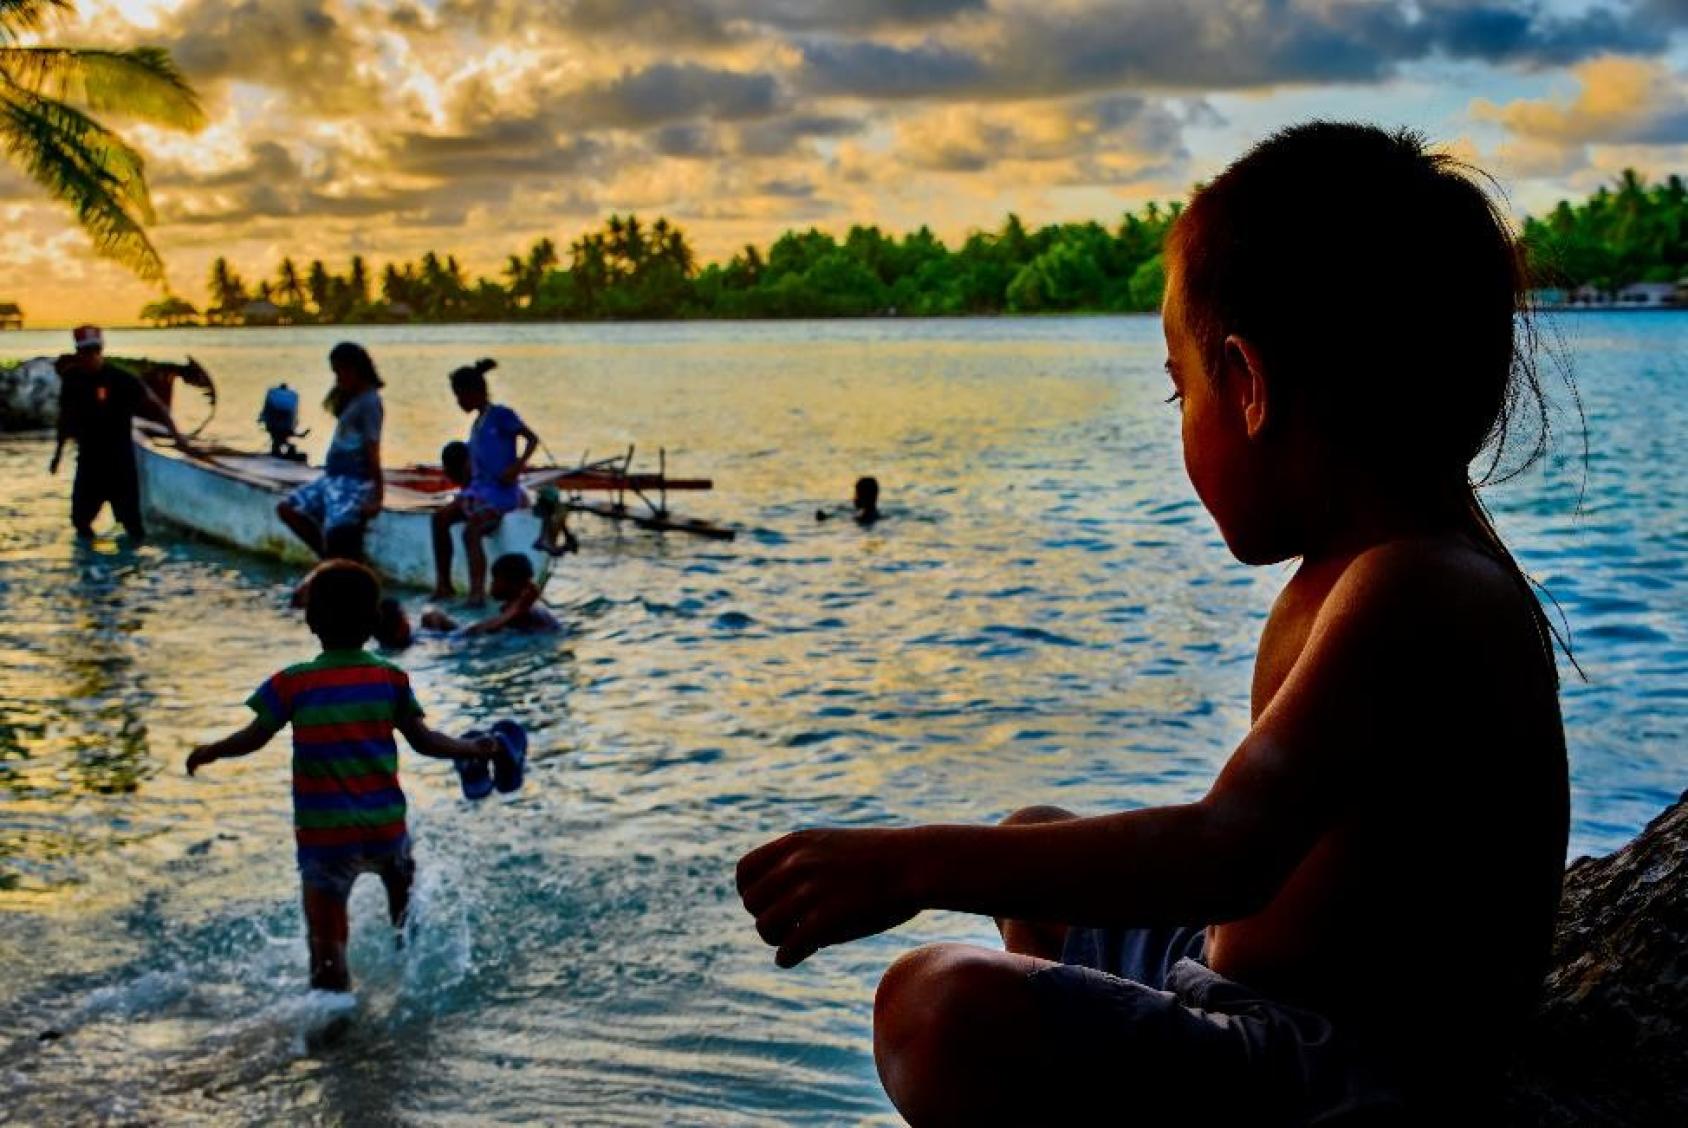 A Kiribati, un jeune enfant regarde un autre enfant s’éloigner du rivage de l’île et se diriger vers une barque autour de laquelle se sont rassemblées plusieurs personnes. On aperçoit au loin l’autre rivage de l’île avec sa végétation luxuriante.